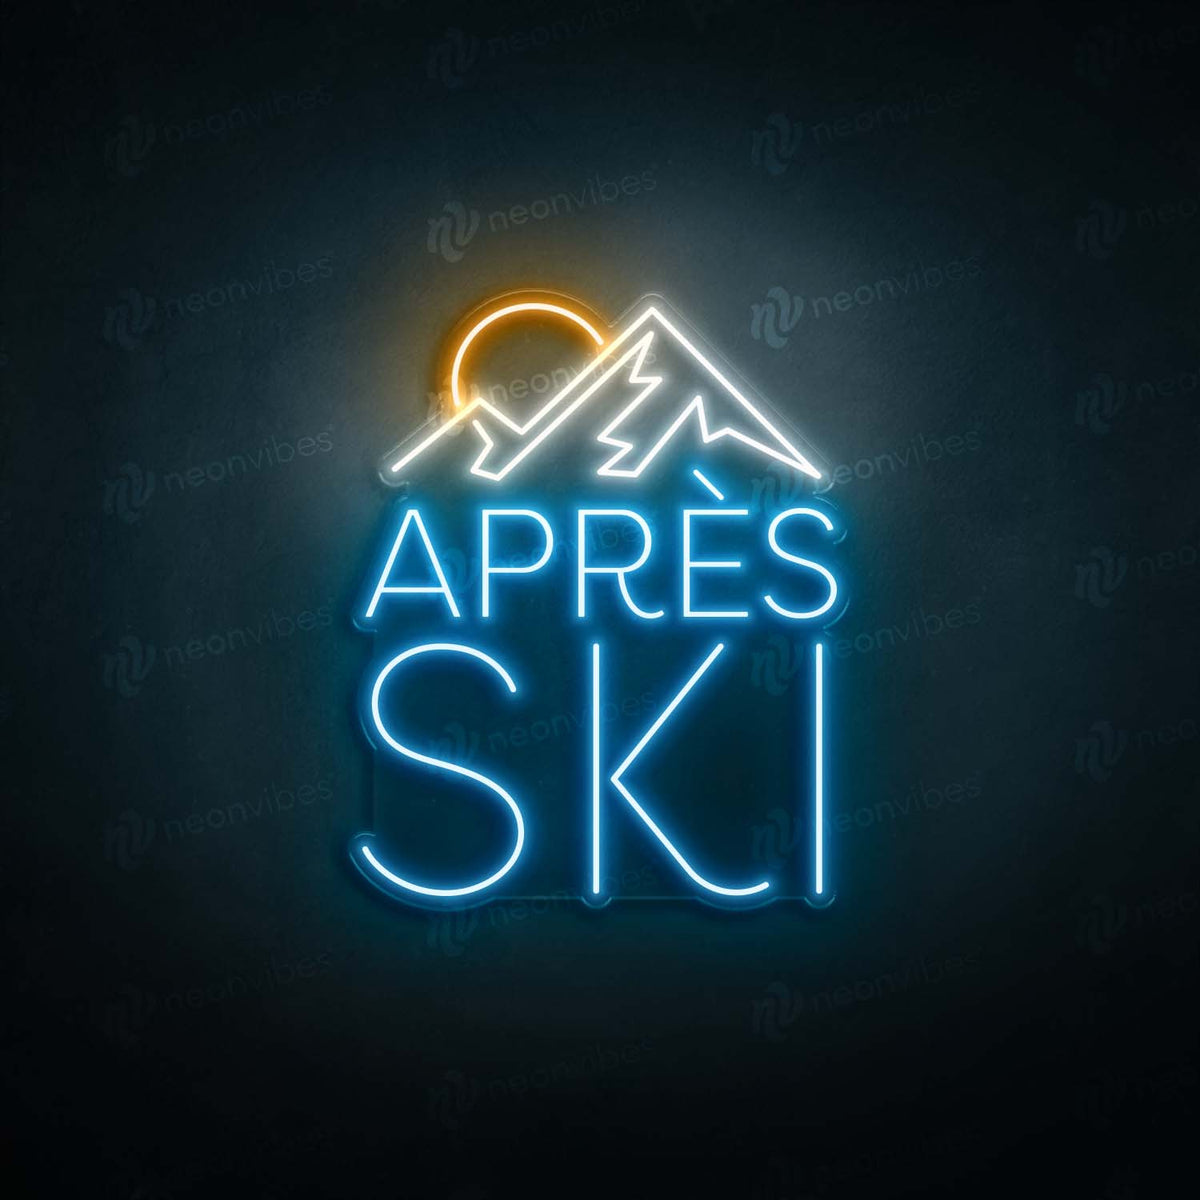 Apres Ski V2 neon sign